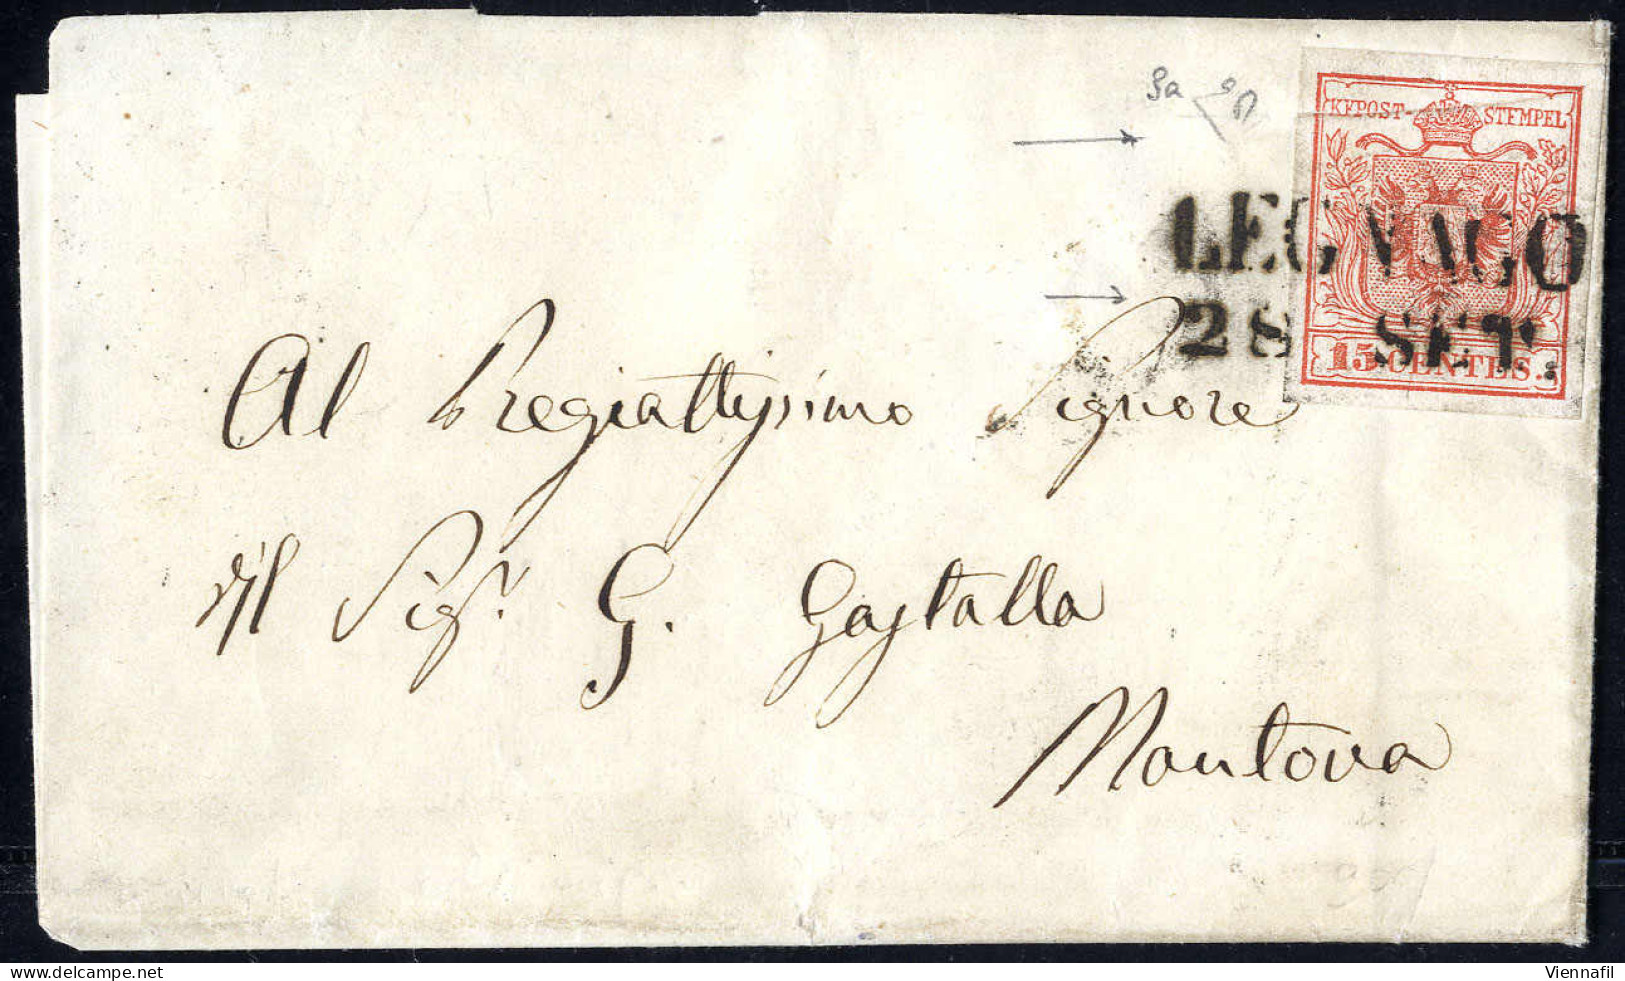 Cover 1850, "Pieghe Di Carta", 15 Cent. Rosso, Prima Tiratura, Con Duplice Piega Orizzontale, Su Lettera Da Legnago 28.9 - Lombardije-Venetië